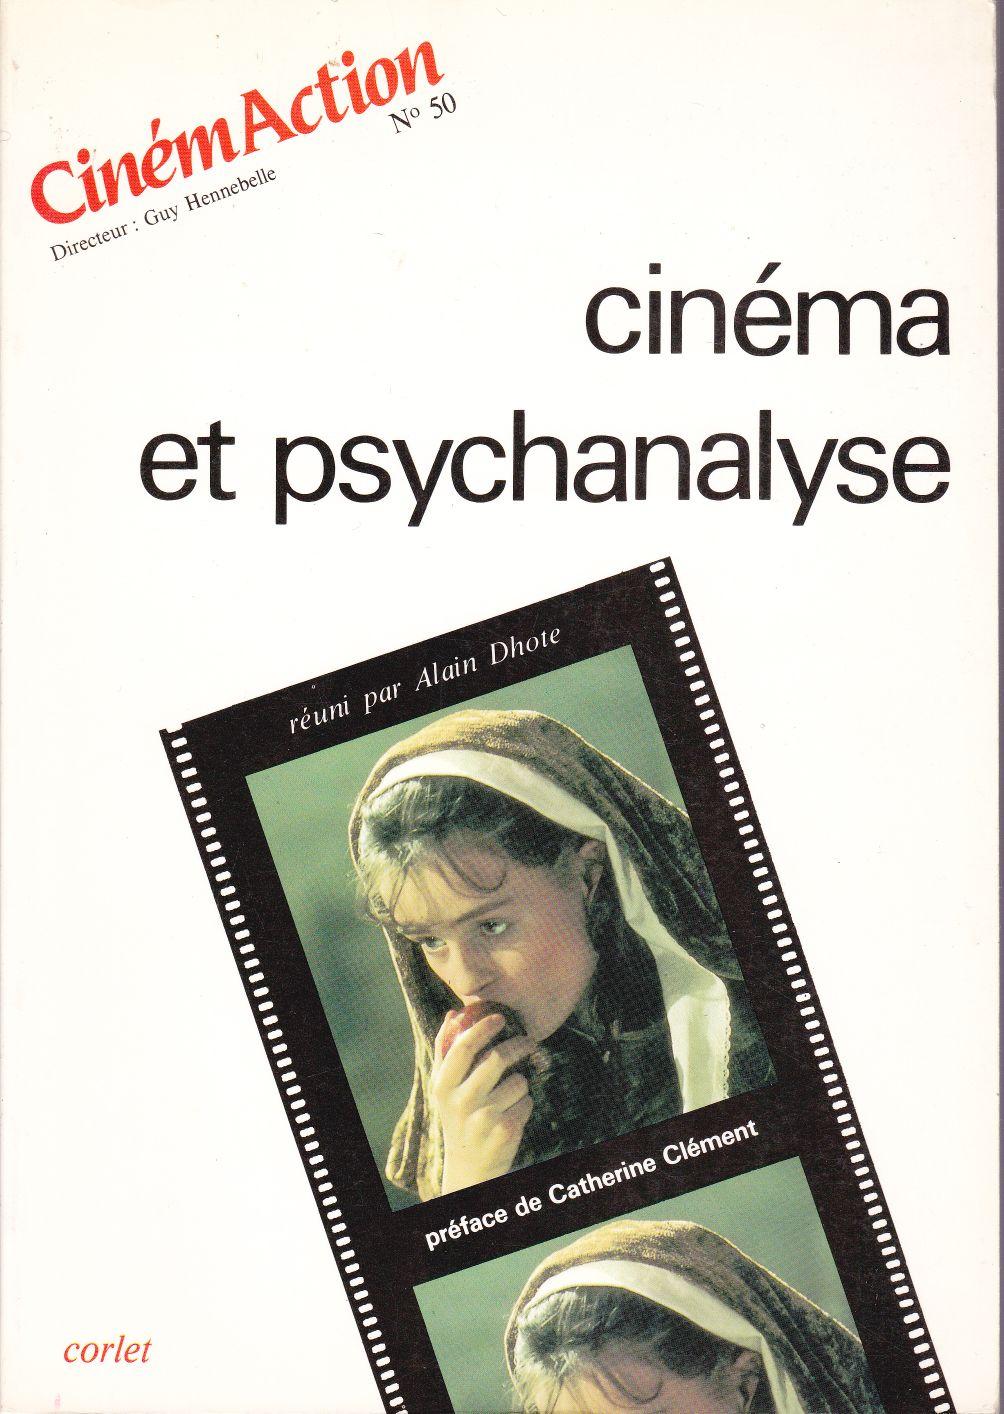 Cinéma et psychanalyse. - CinémAction (Alain DHOTE)